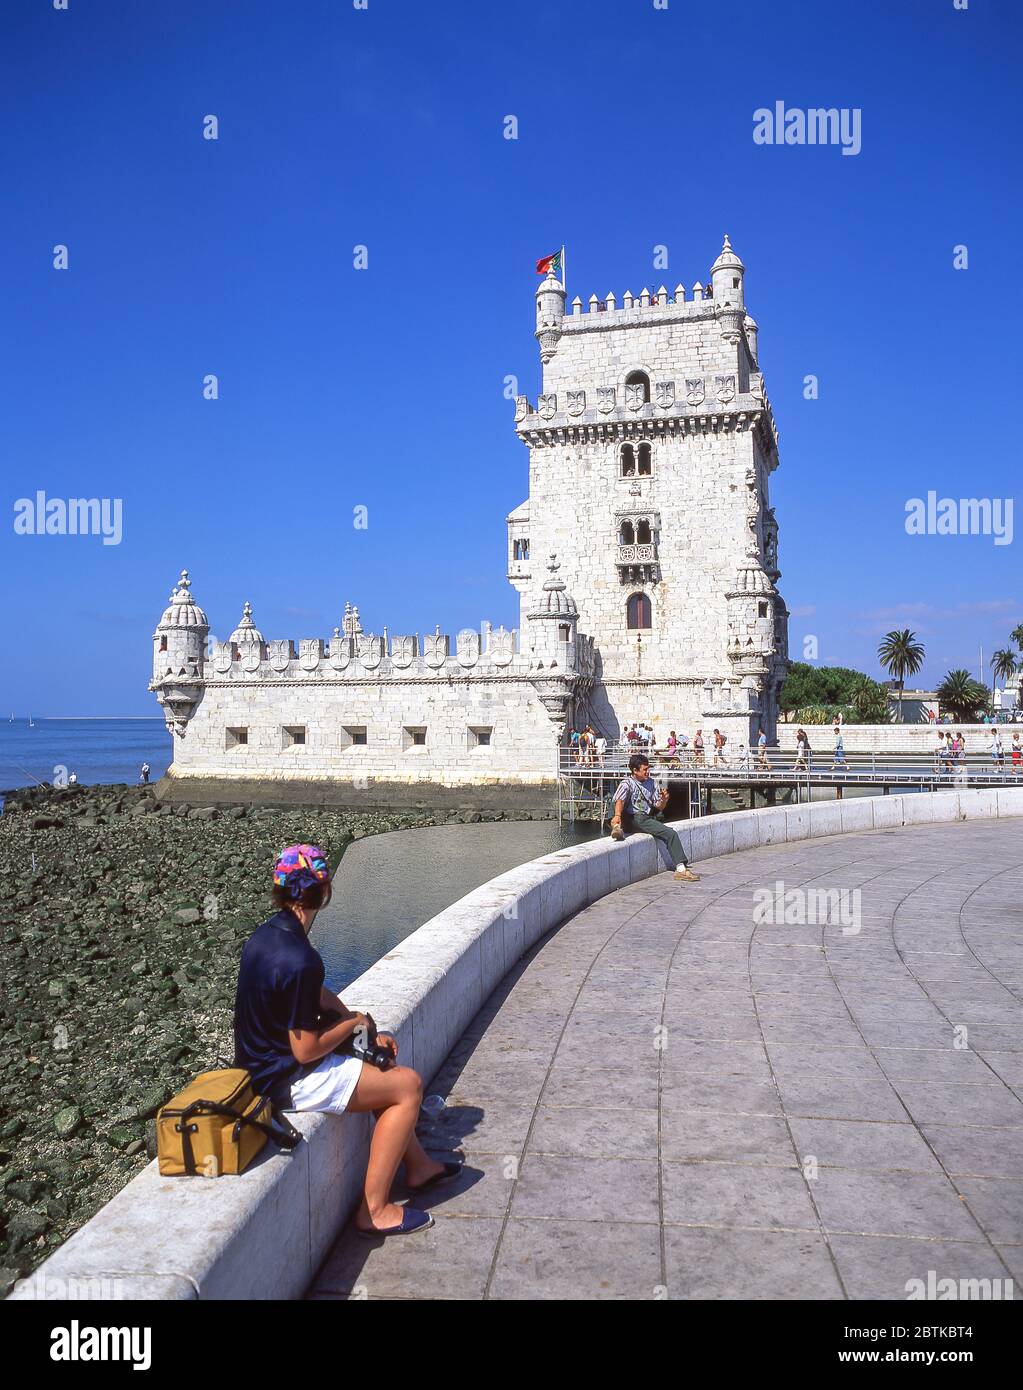 Tour Belém du XVIe siècle (Torre de Belem) sur les rives du Tage, quartier Belém, Lisbonne, Portugal Banque D'Images